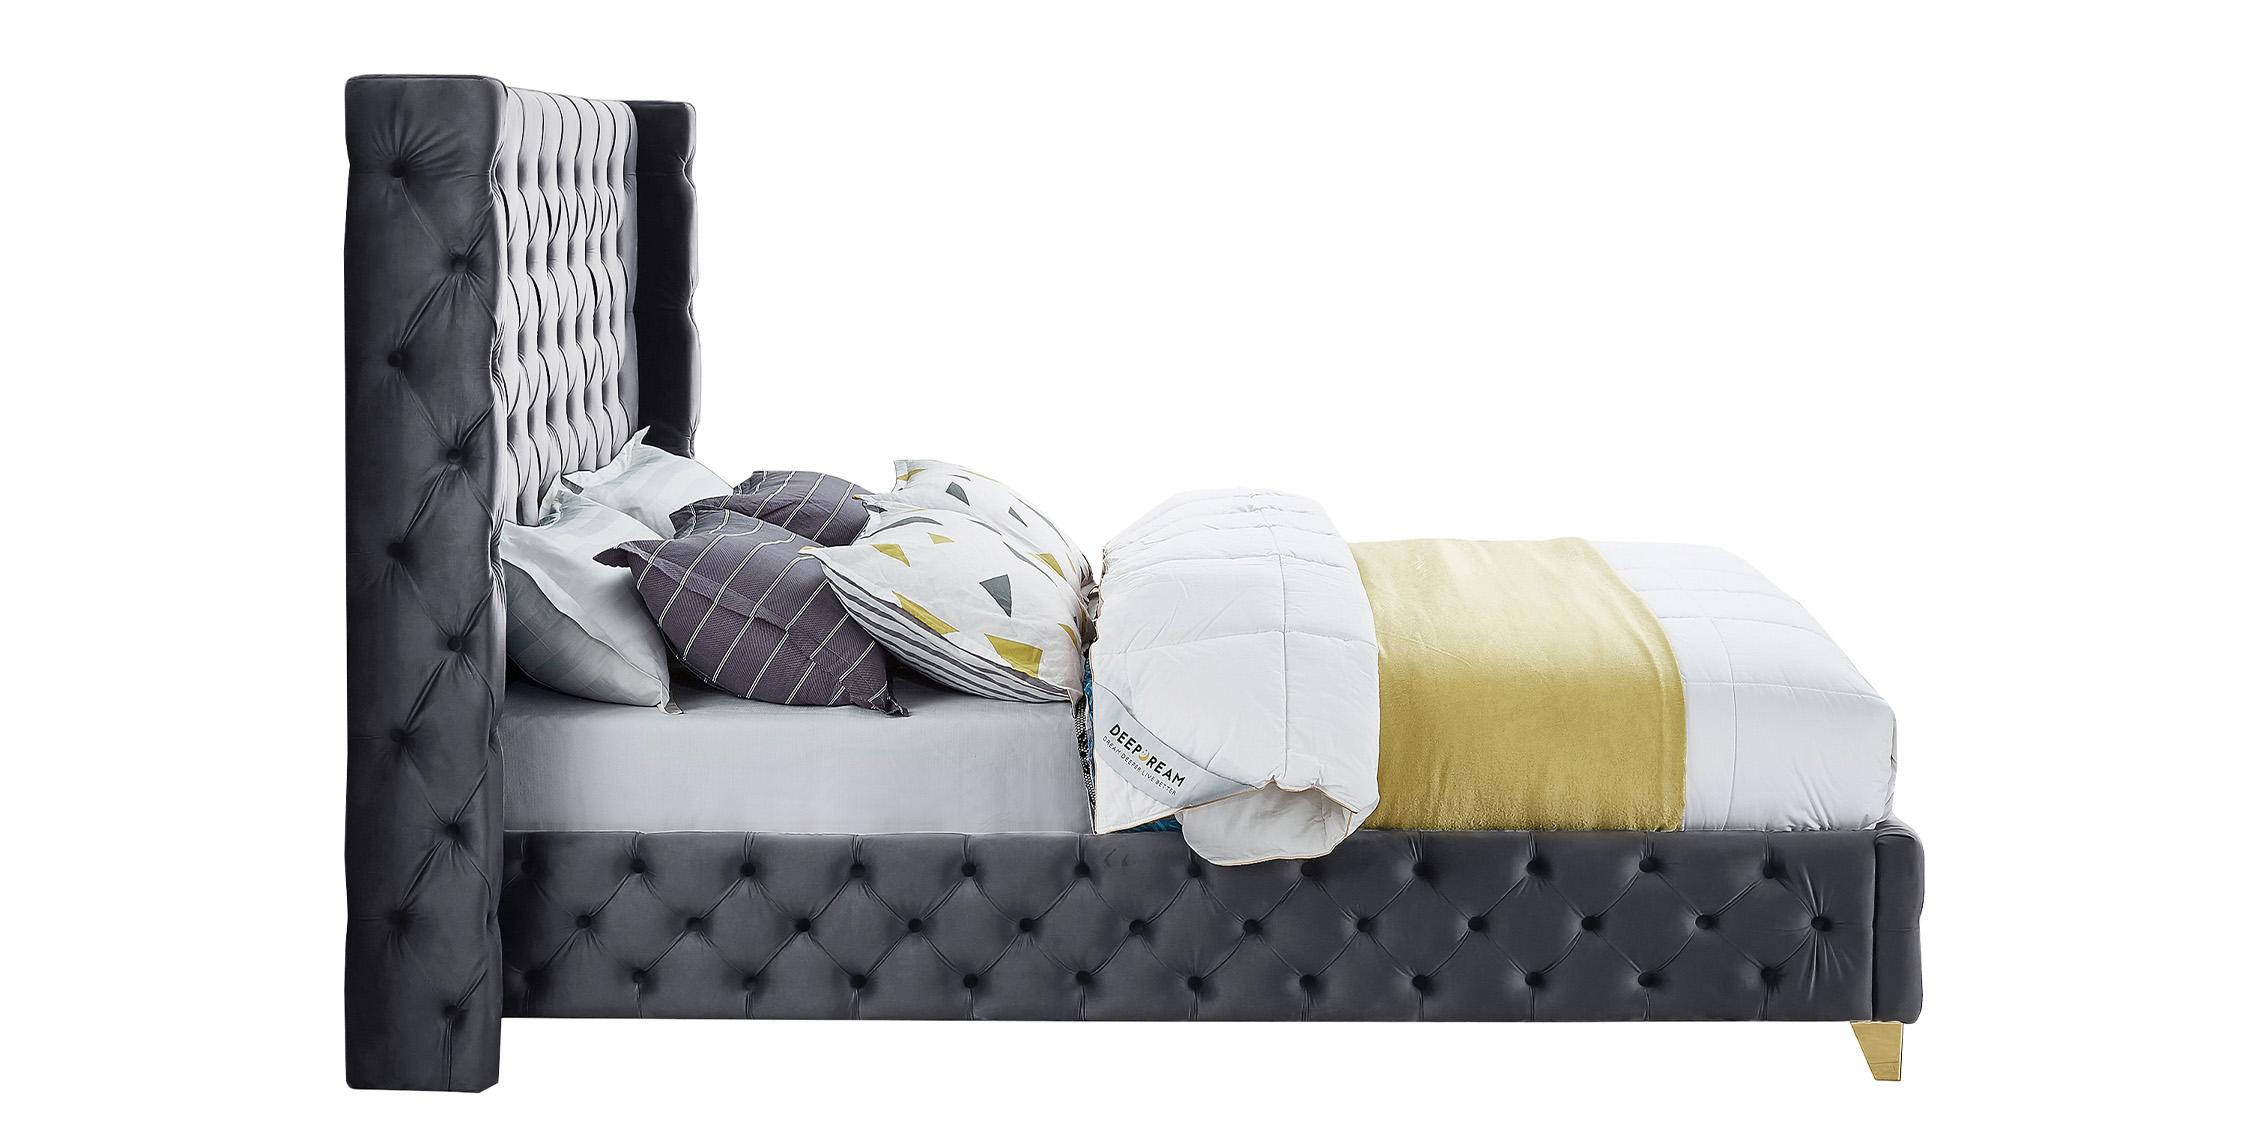 

    
SavanGrey-K Grey Velvet Tufted King Bed SAVAN SavanGrey-K Meridian Modern Contemporary
